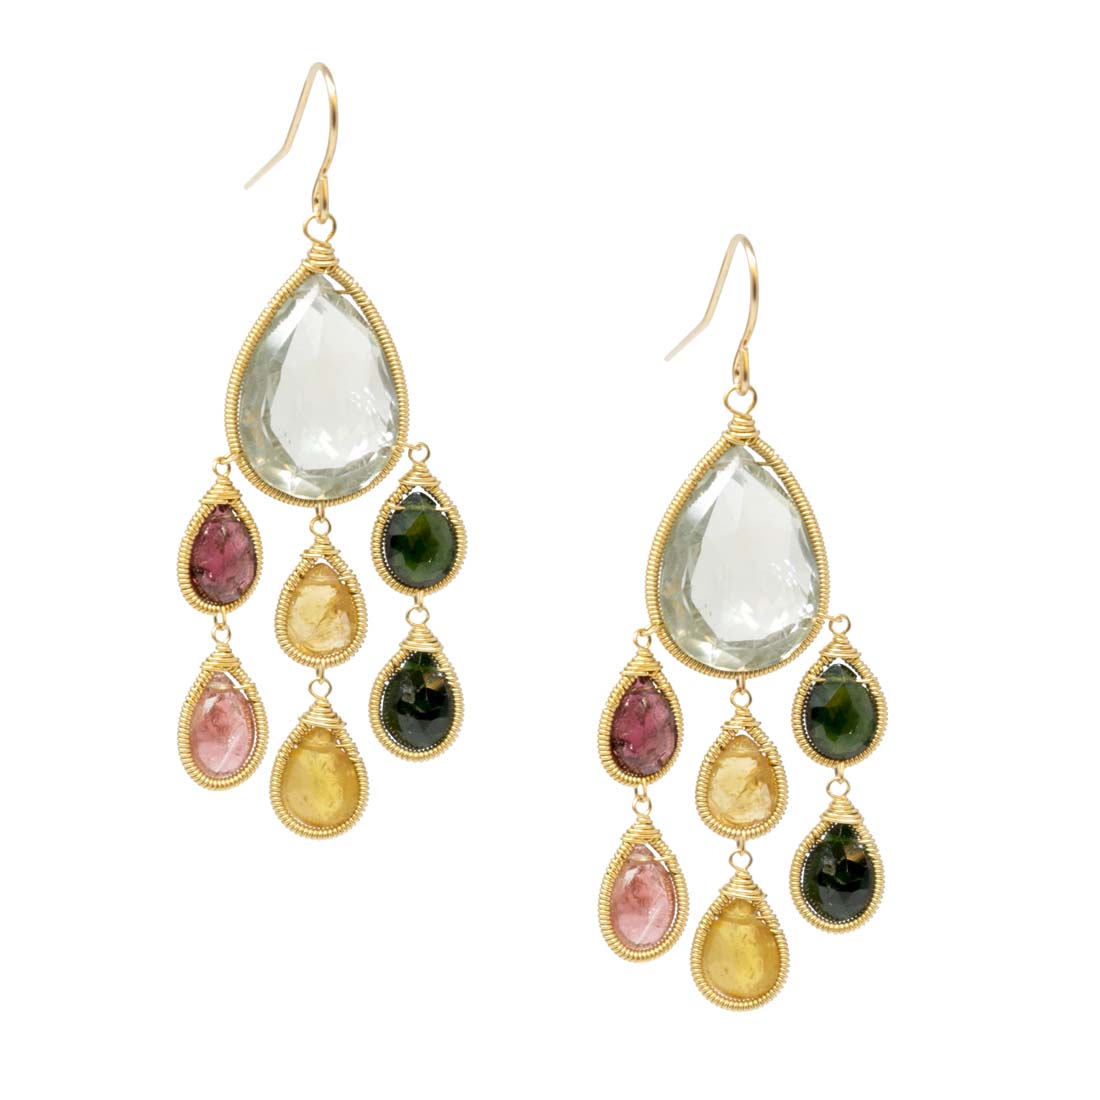 Gemstone Treasure Chest Earrings